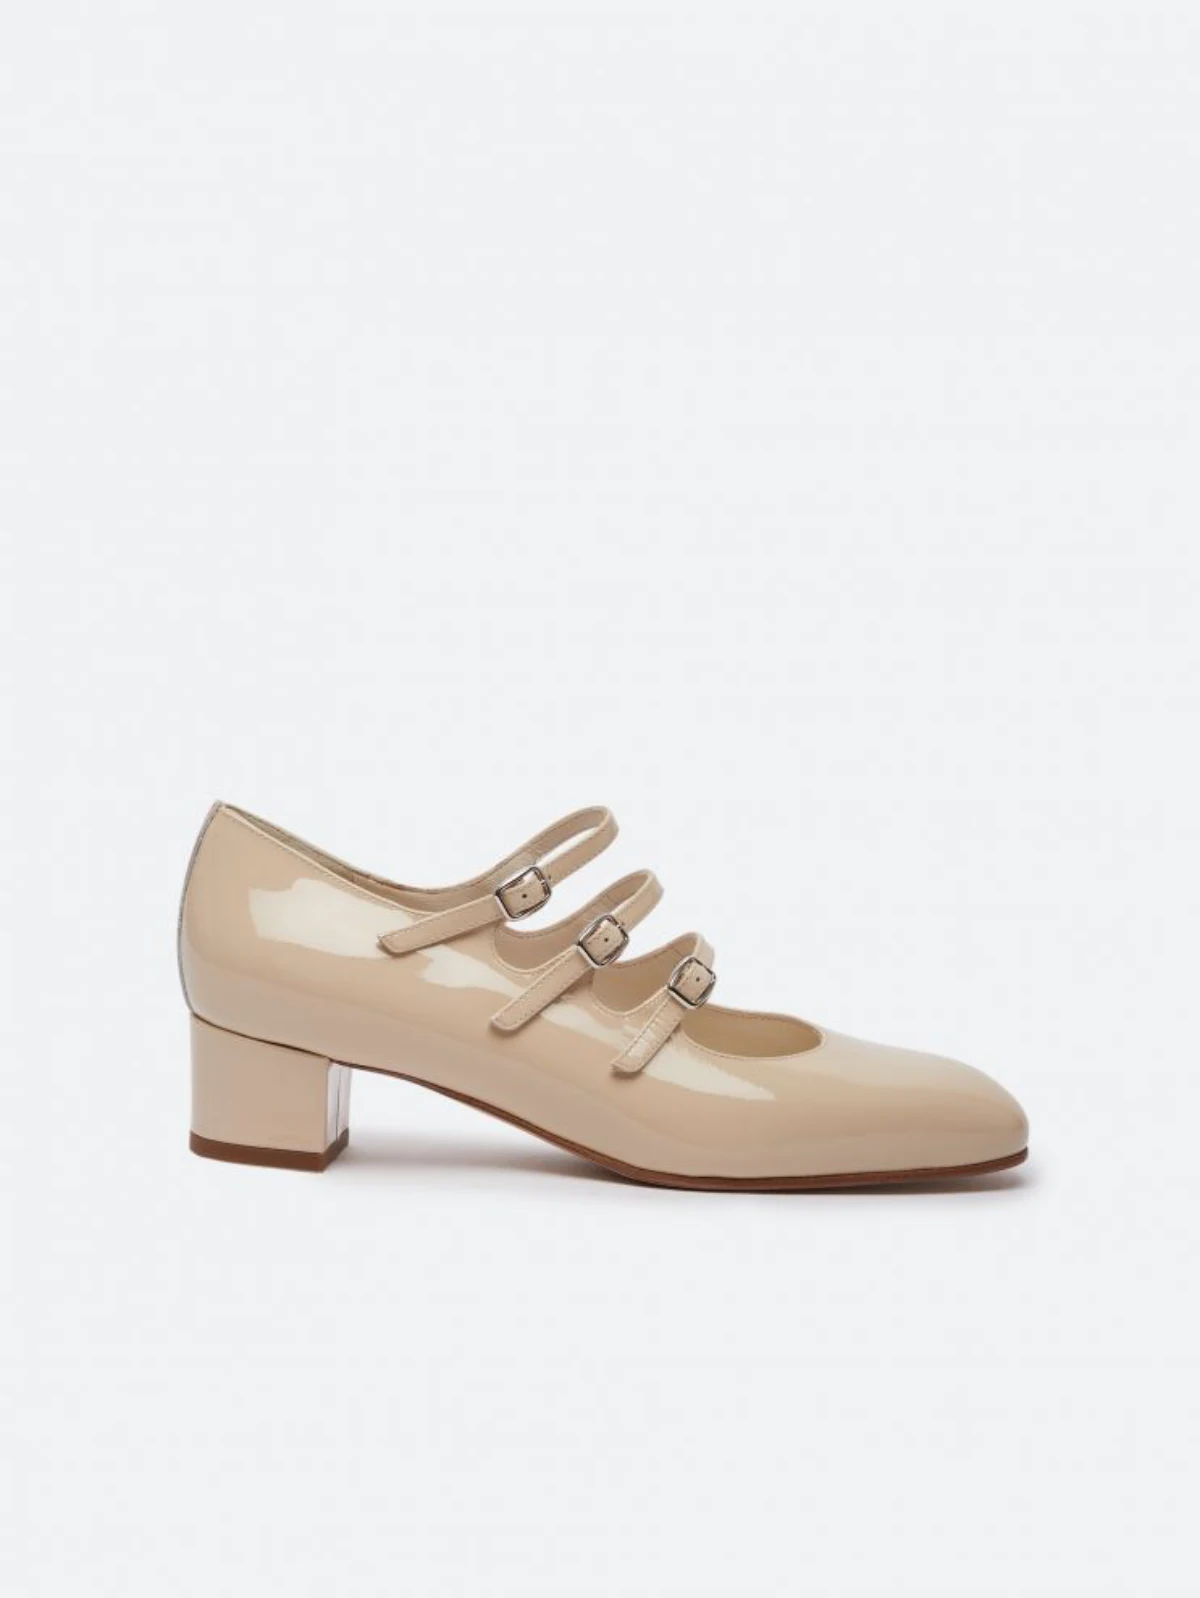 modeles de chaussures type ballerines verni beige